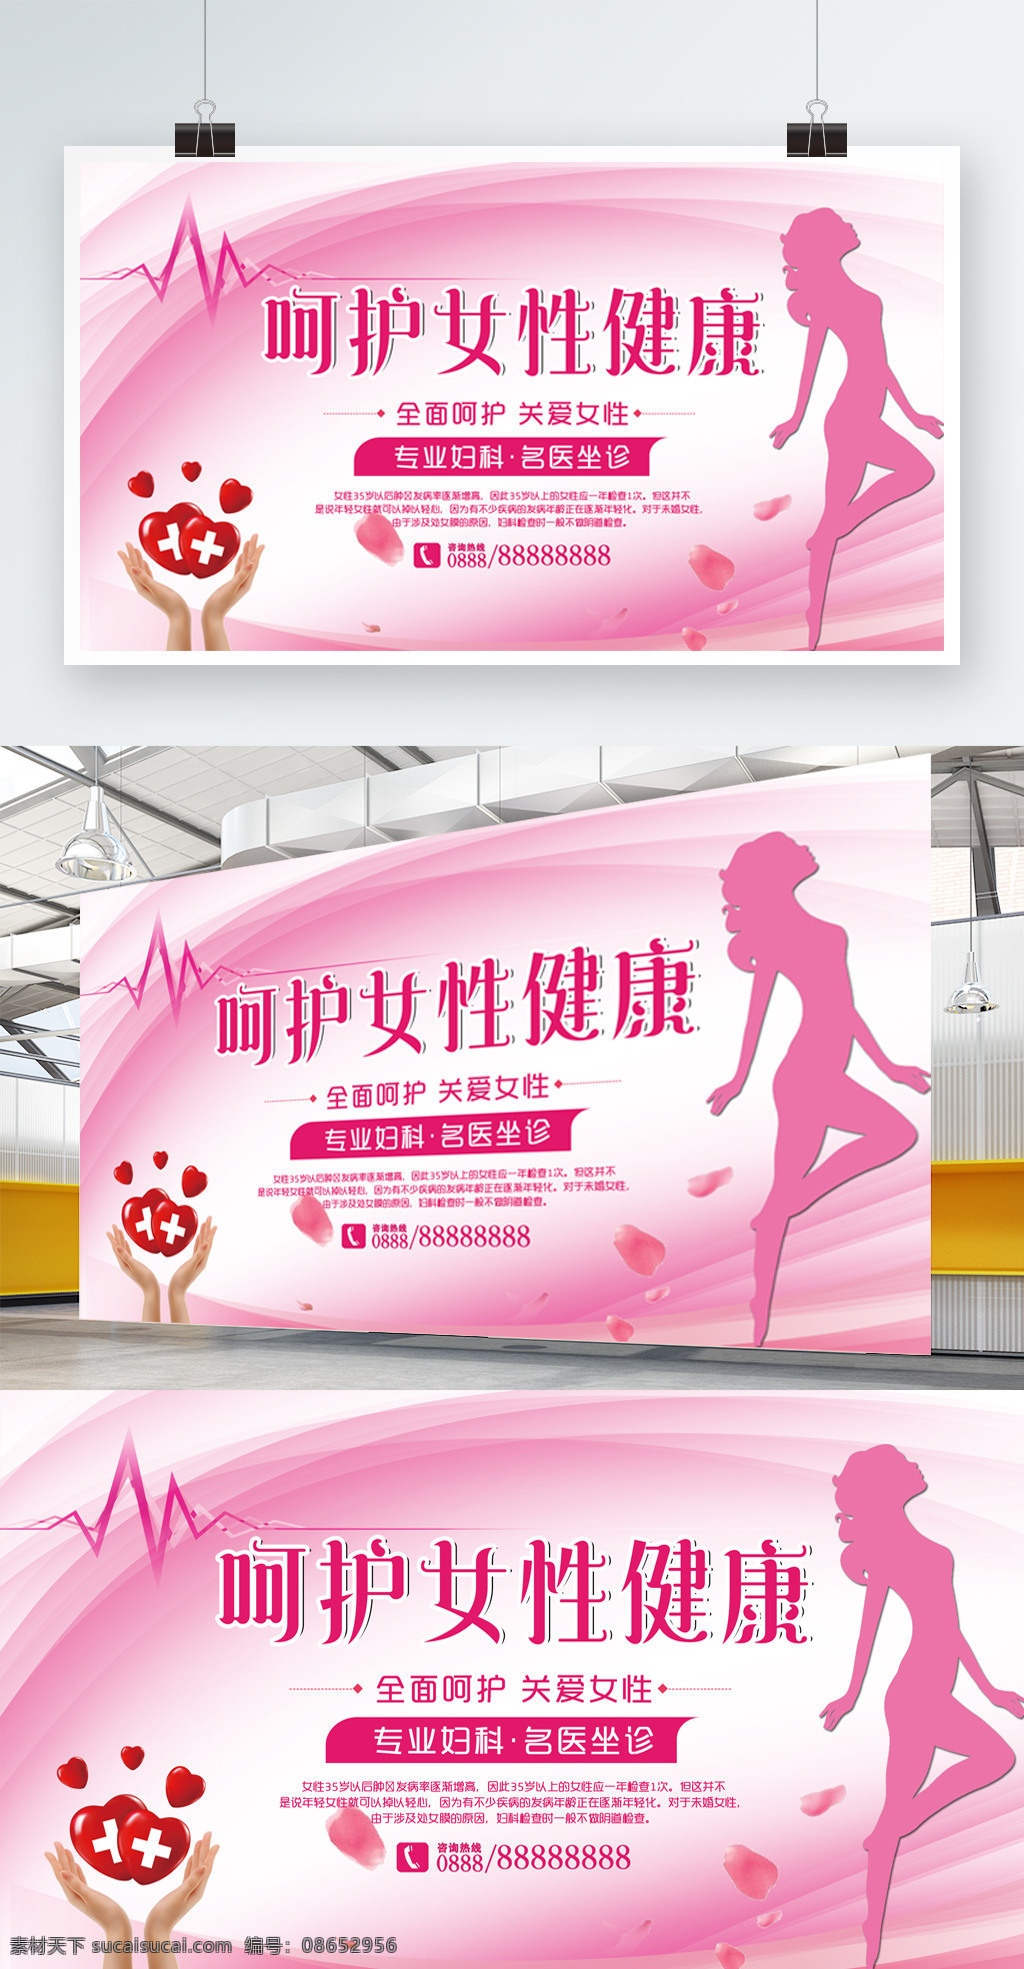 粉红色 呵护 女性健康 医疗 展板 呵护女性健康 医疗展板 背景 妇科 医疗妇科